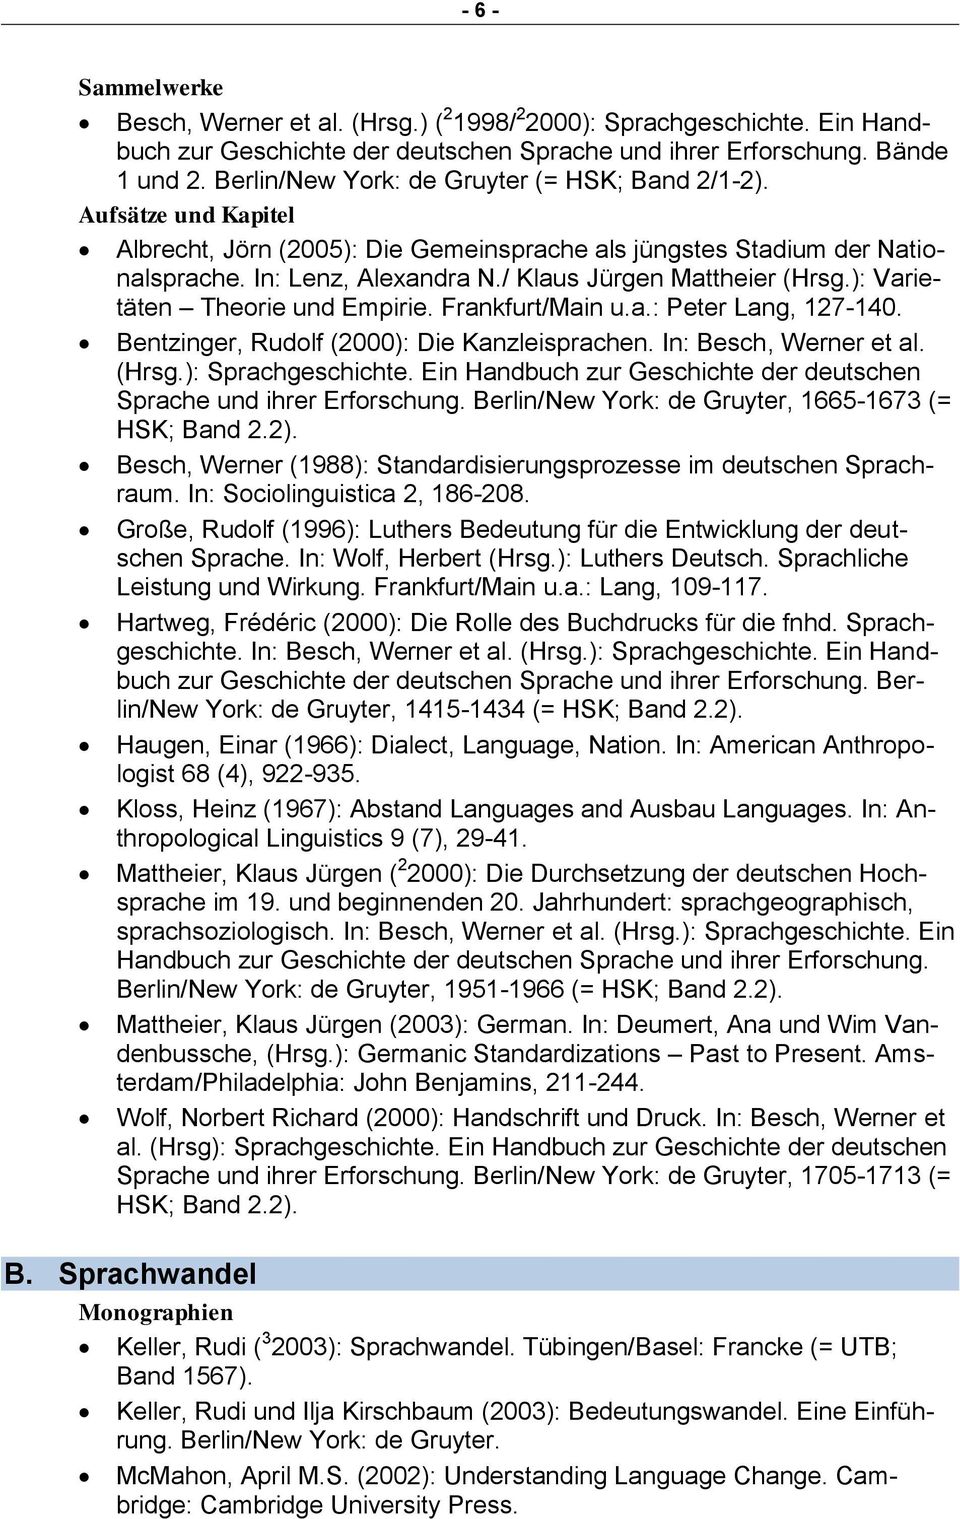 ): Varietäten Theorie und Empirie. Frankfurt/Main u.a.: Peter Lang, 127-140. Bentzinger, Rudolf (2000): Die Kanzleisprachen. In: Besch, Werner et al. (Hrsg.): Sprachgeschichte.